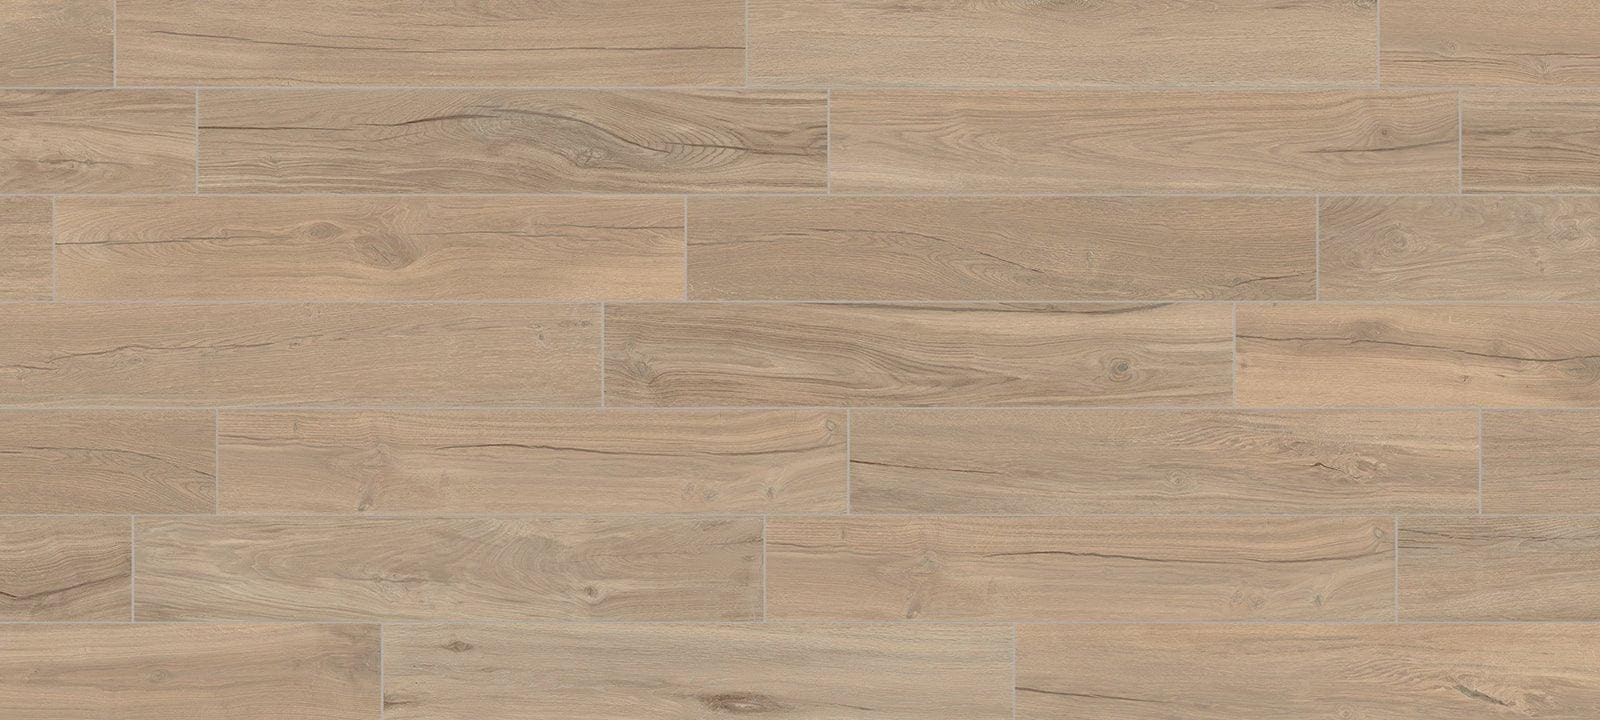 Minoli Tiles – Wood Effect 20 x 120 x 0.9cm Sold by 1.44m² Jurupa Master Matt